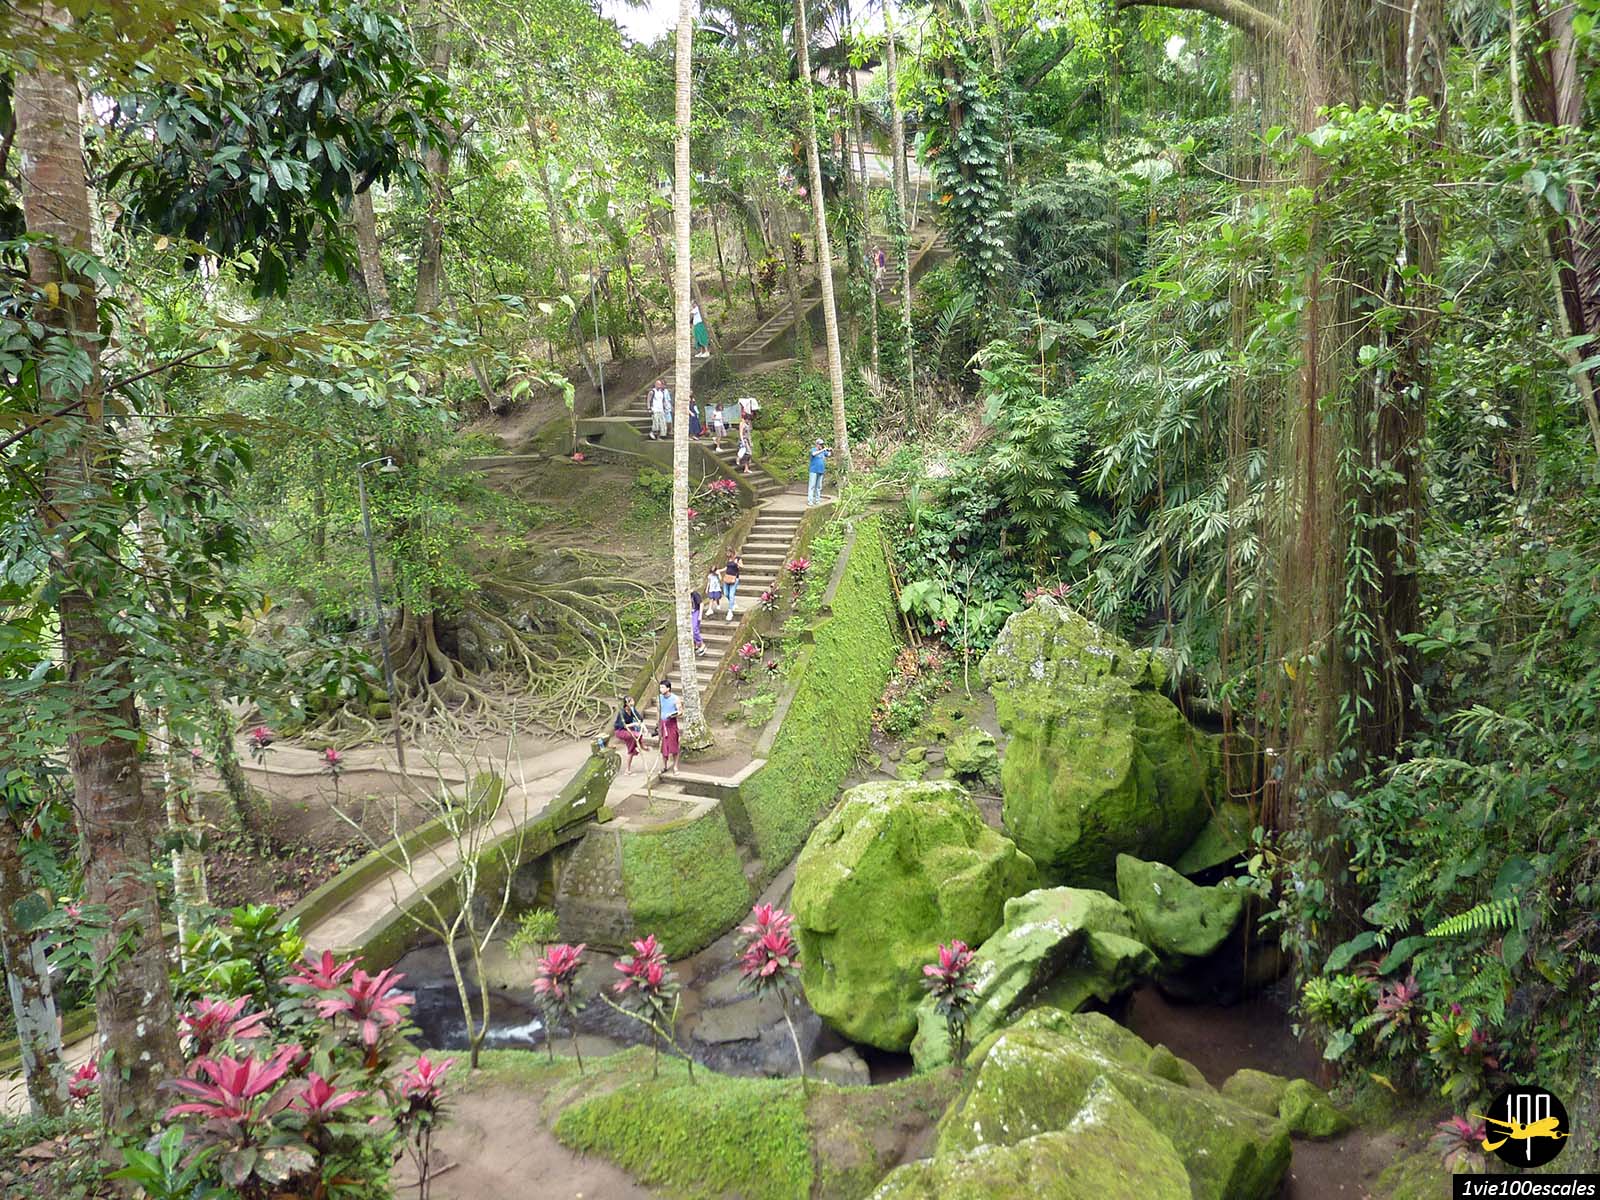 Goa Gajah Cave est un important site archéologique hindou et un temple au milieu des rizières vertes de Bali